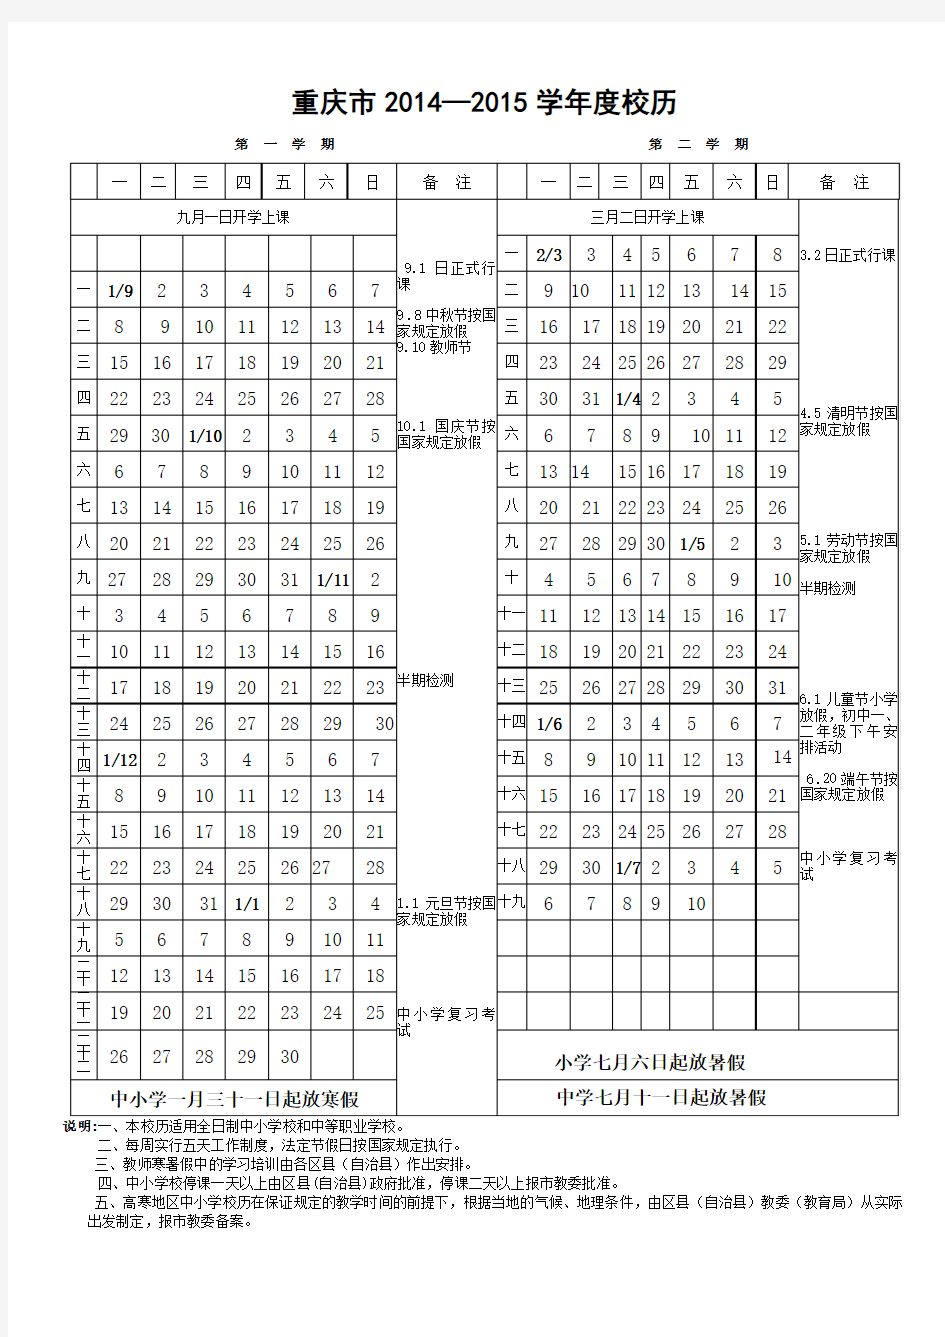 重庆市2014—2015学年度校历